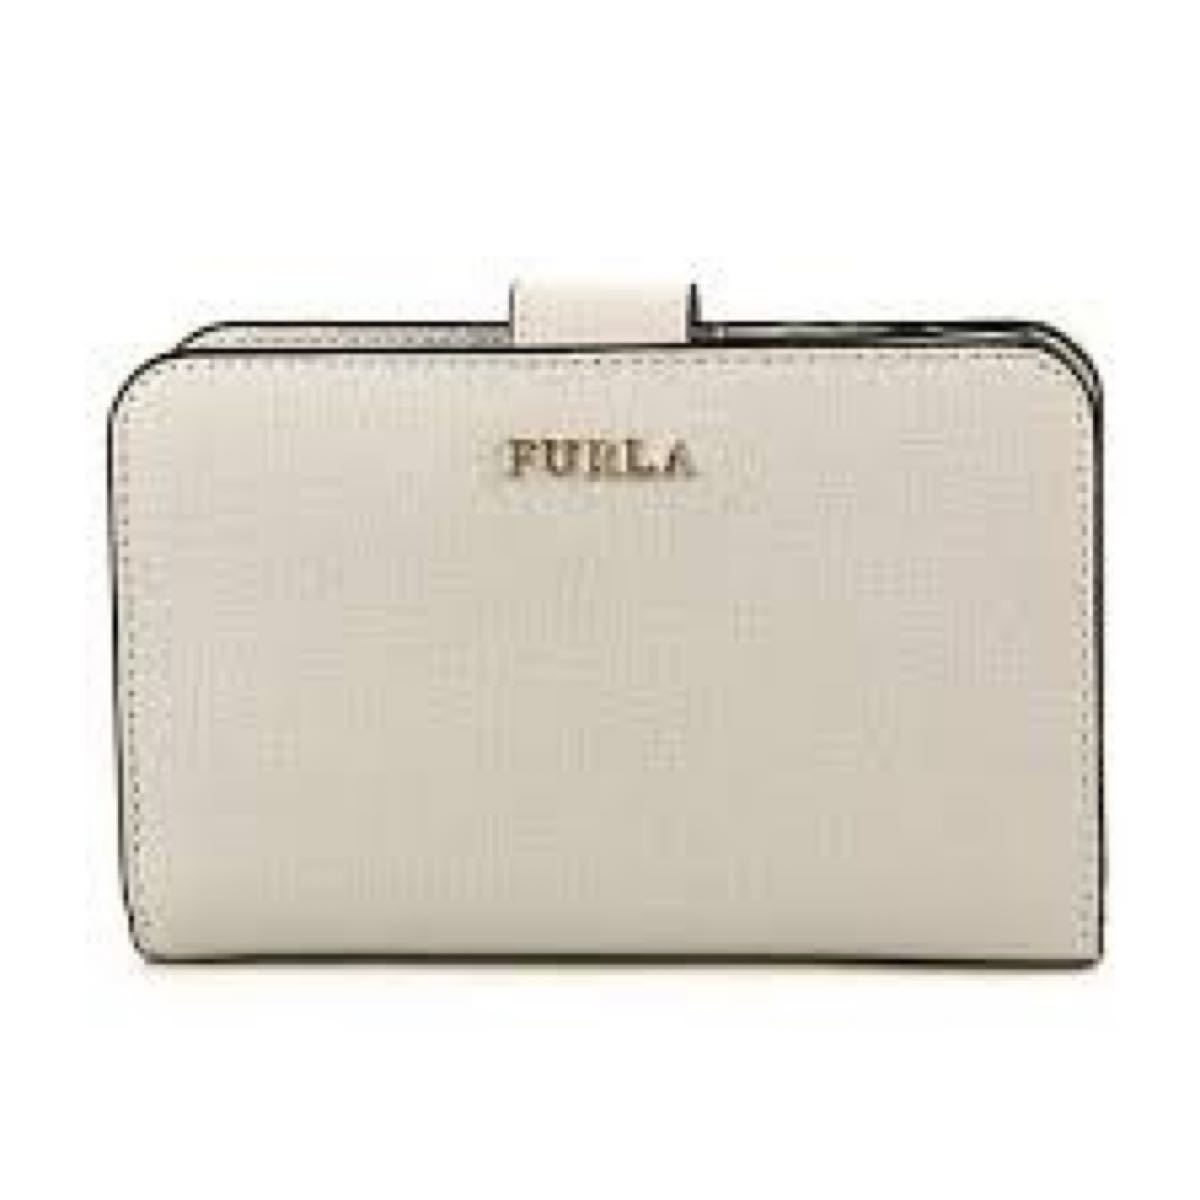 【新品未使用】FURLA フルラ 二つ折り財布